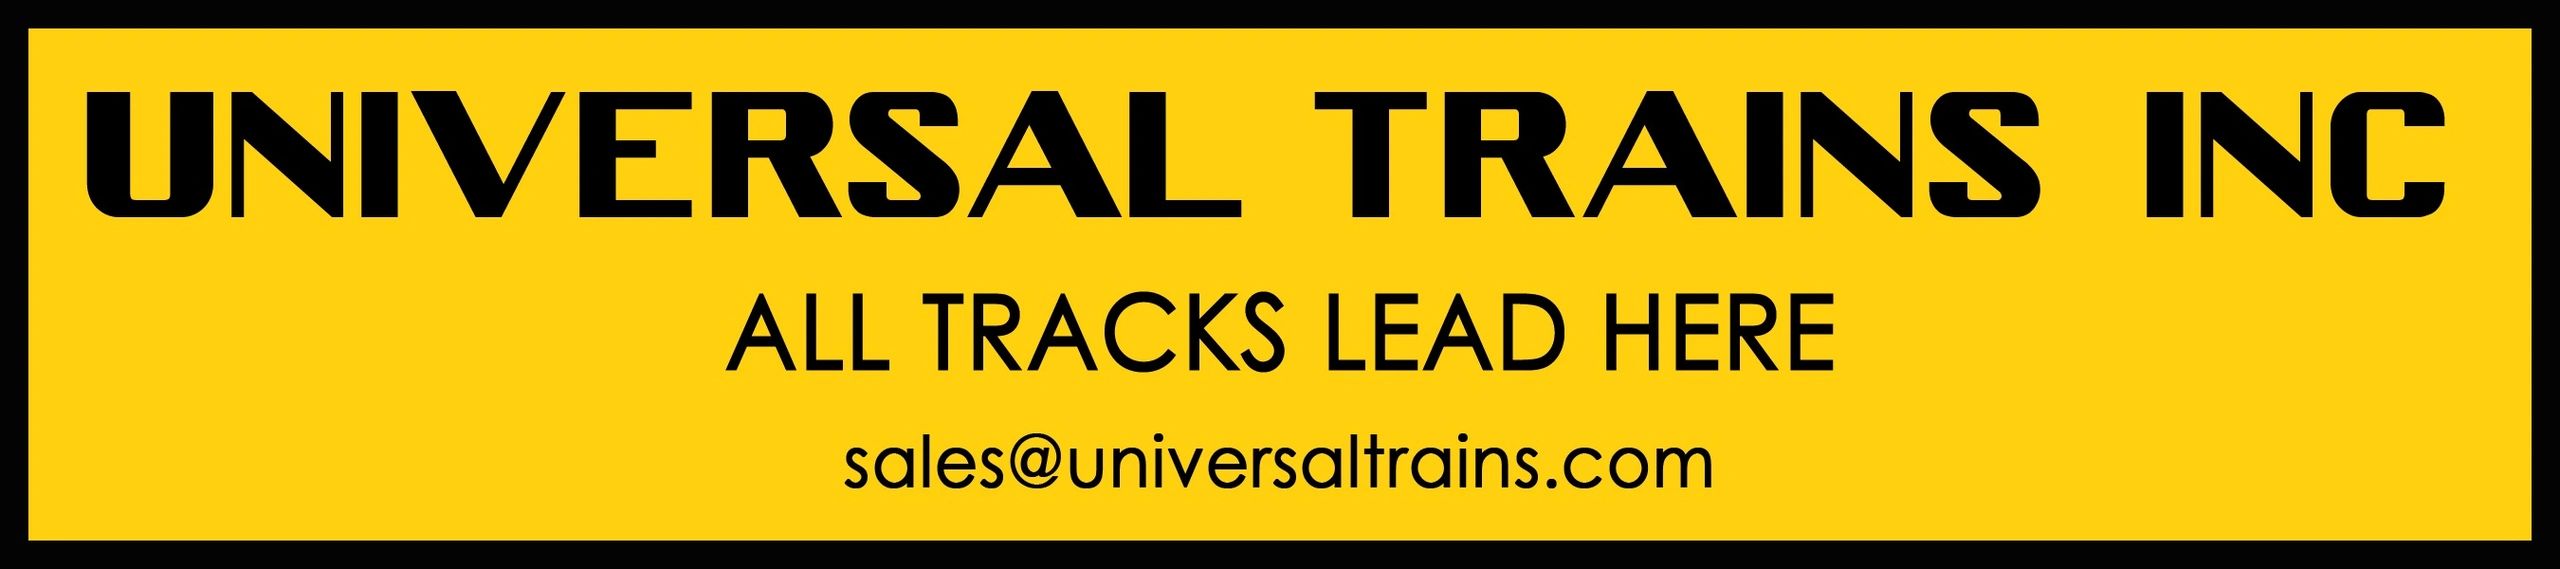 Universal Trains INC